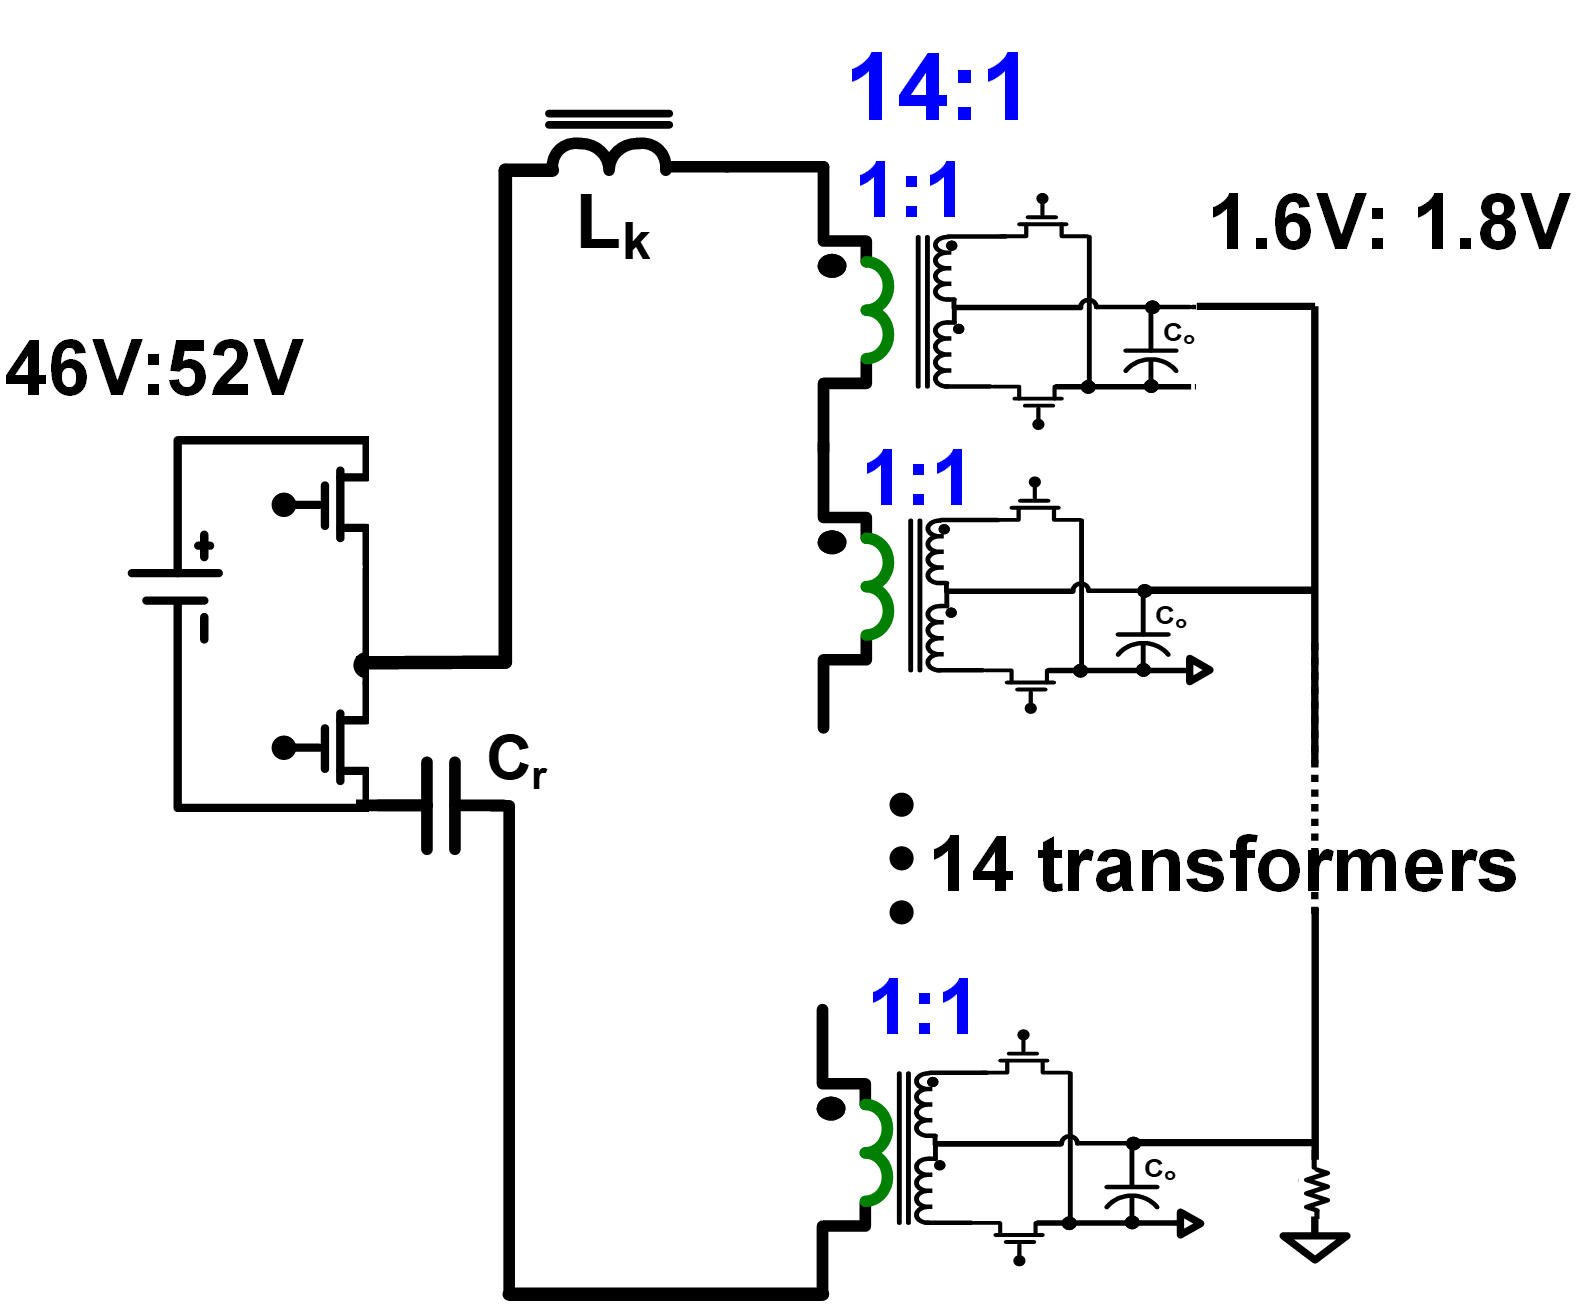 Converter circuit diagram